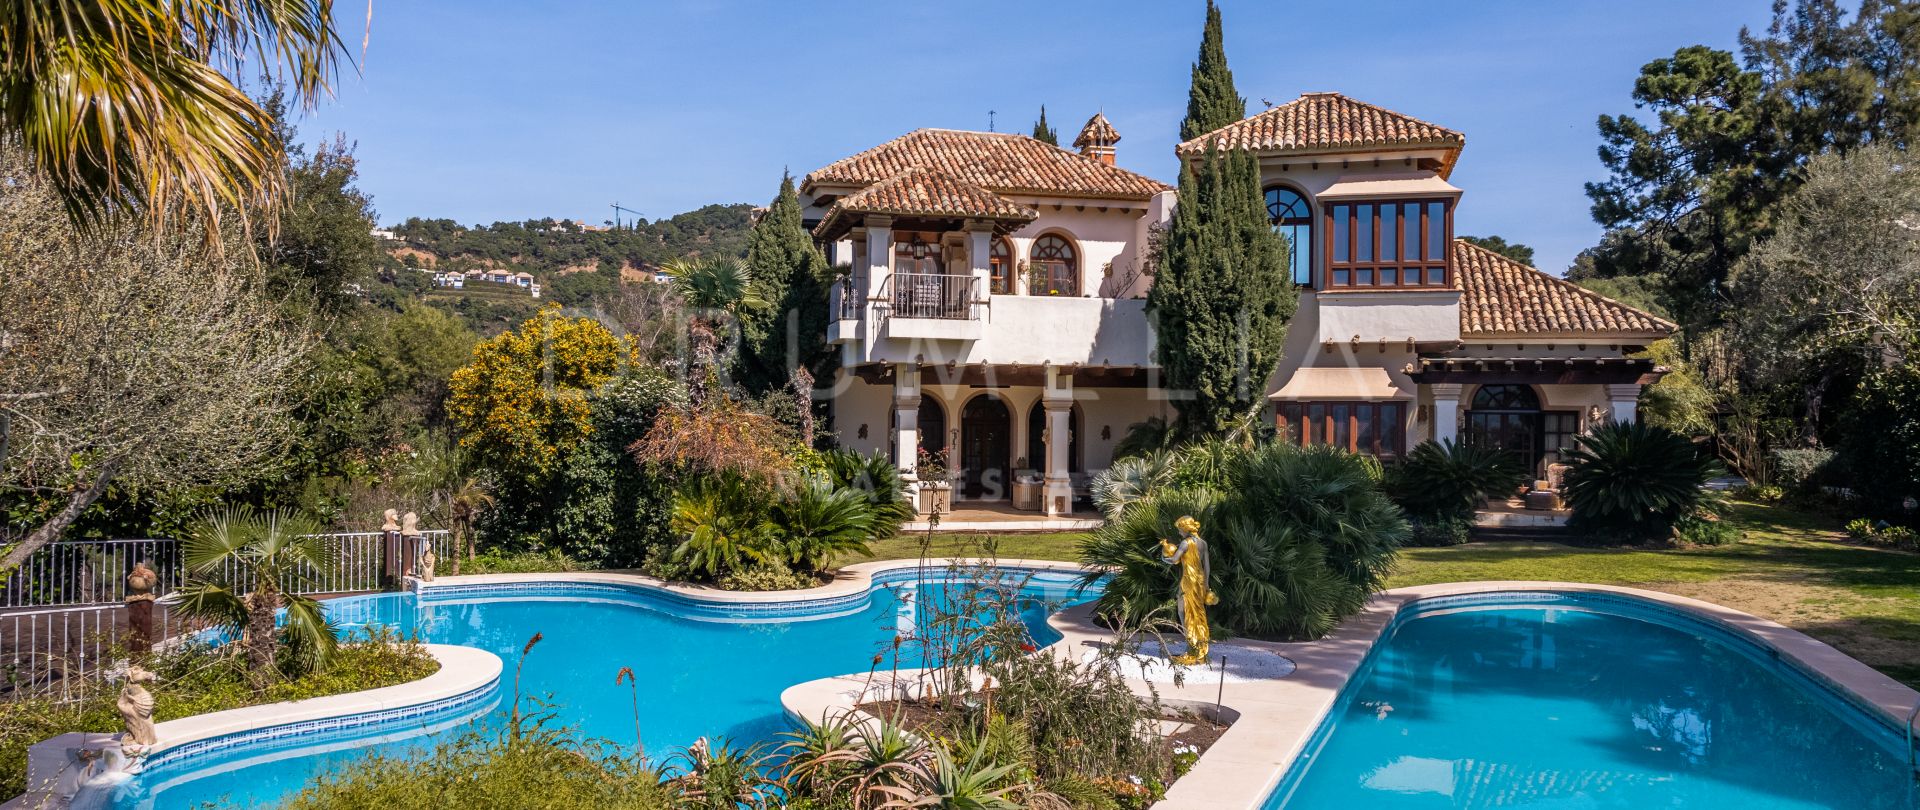 Magnífica villa mediterránea de estilo clásico en venta en la fabulosa La Zagaleta, Benahavís